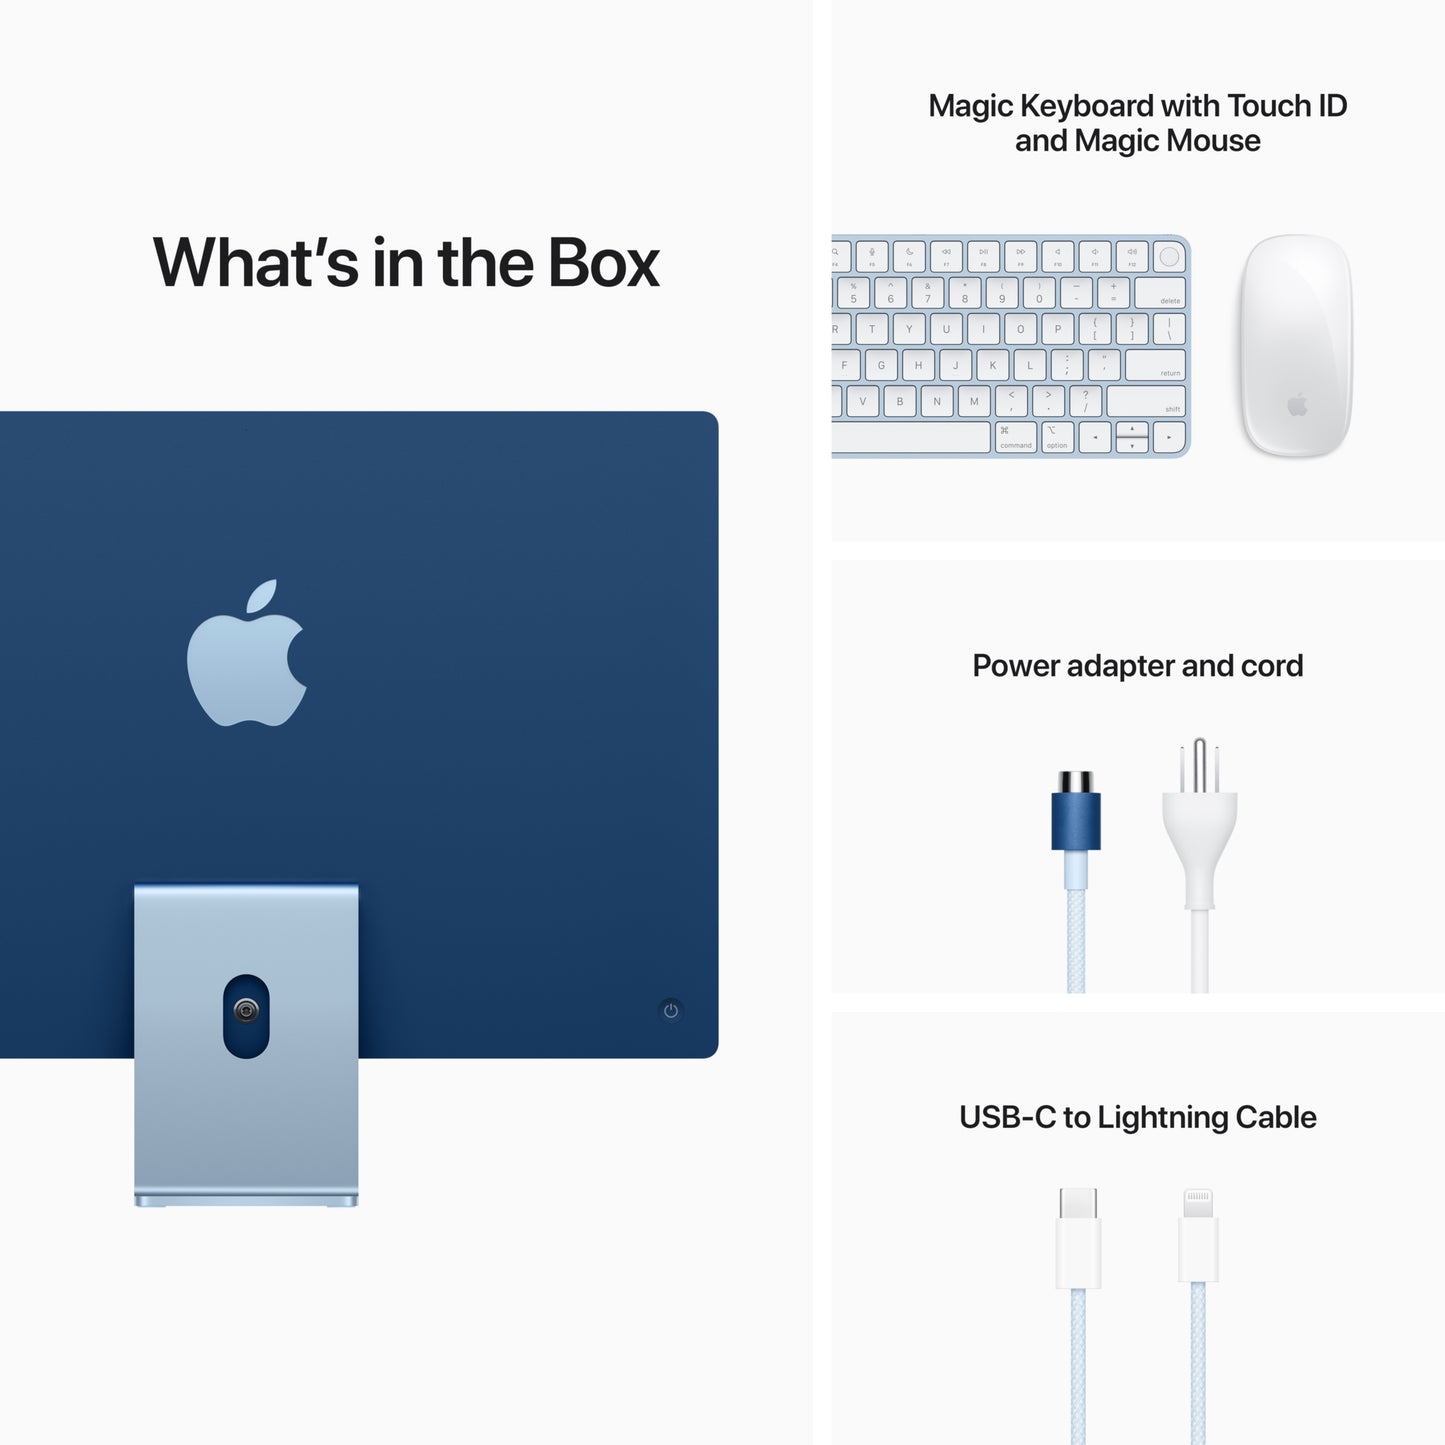 24-inch iMac with Apple M1 / 8-Core Cpu / 8-core GPU (2021 model)